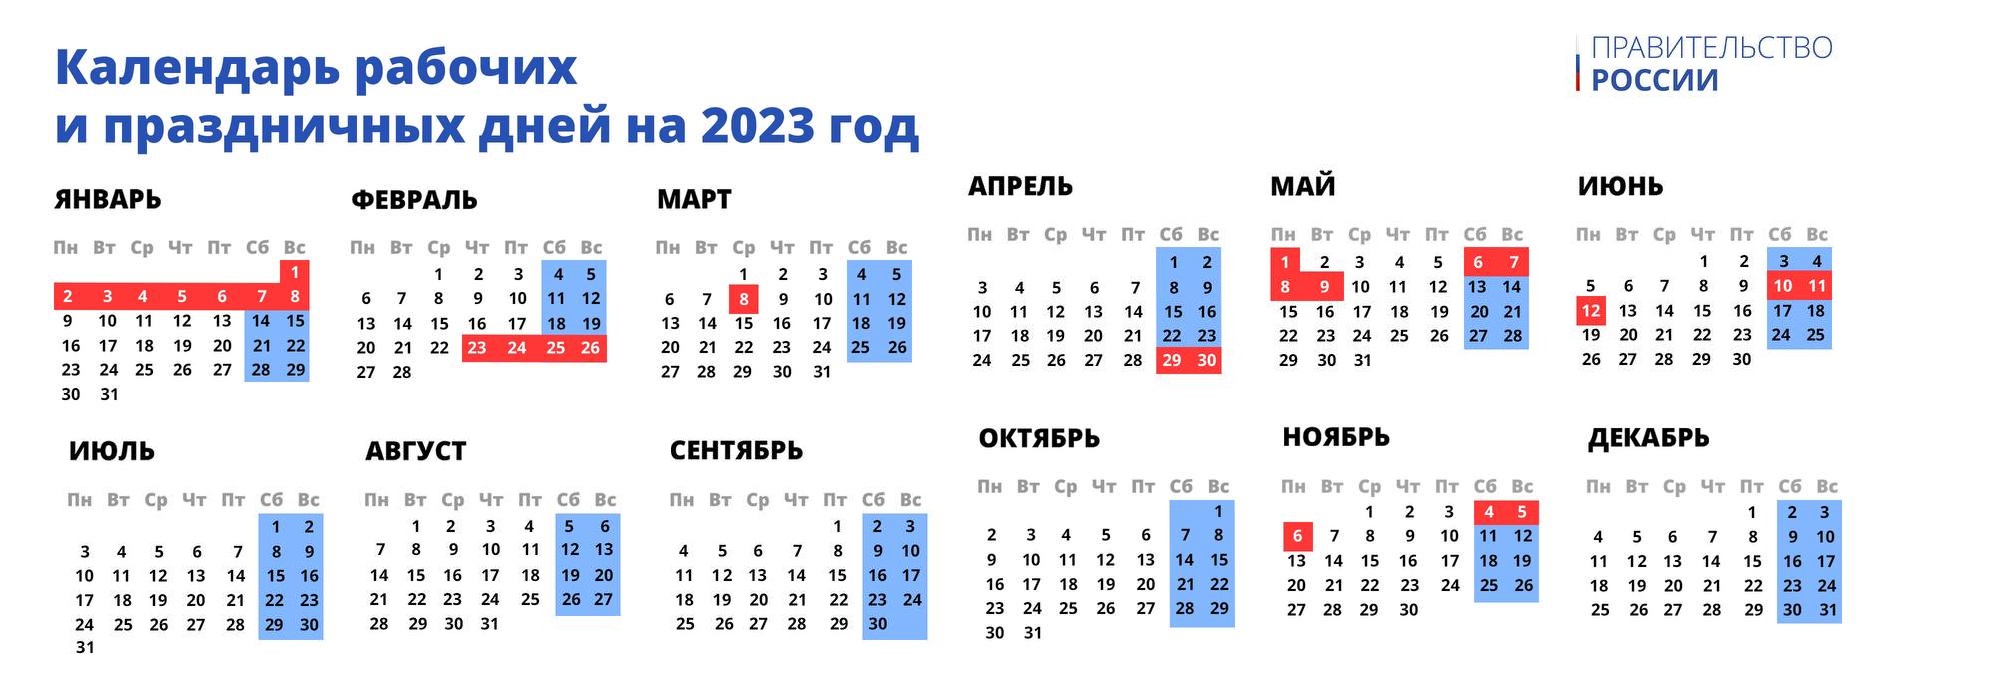 Установлен официальный календарь выходных и праздничных дней в 2023 году